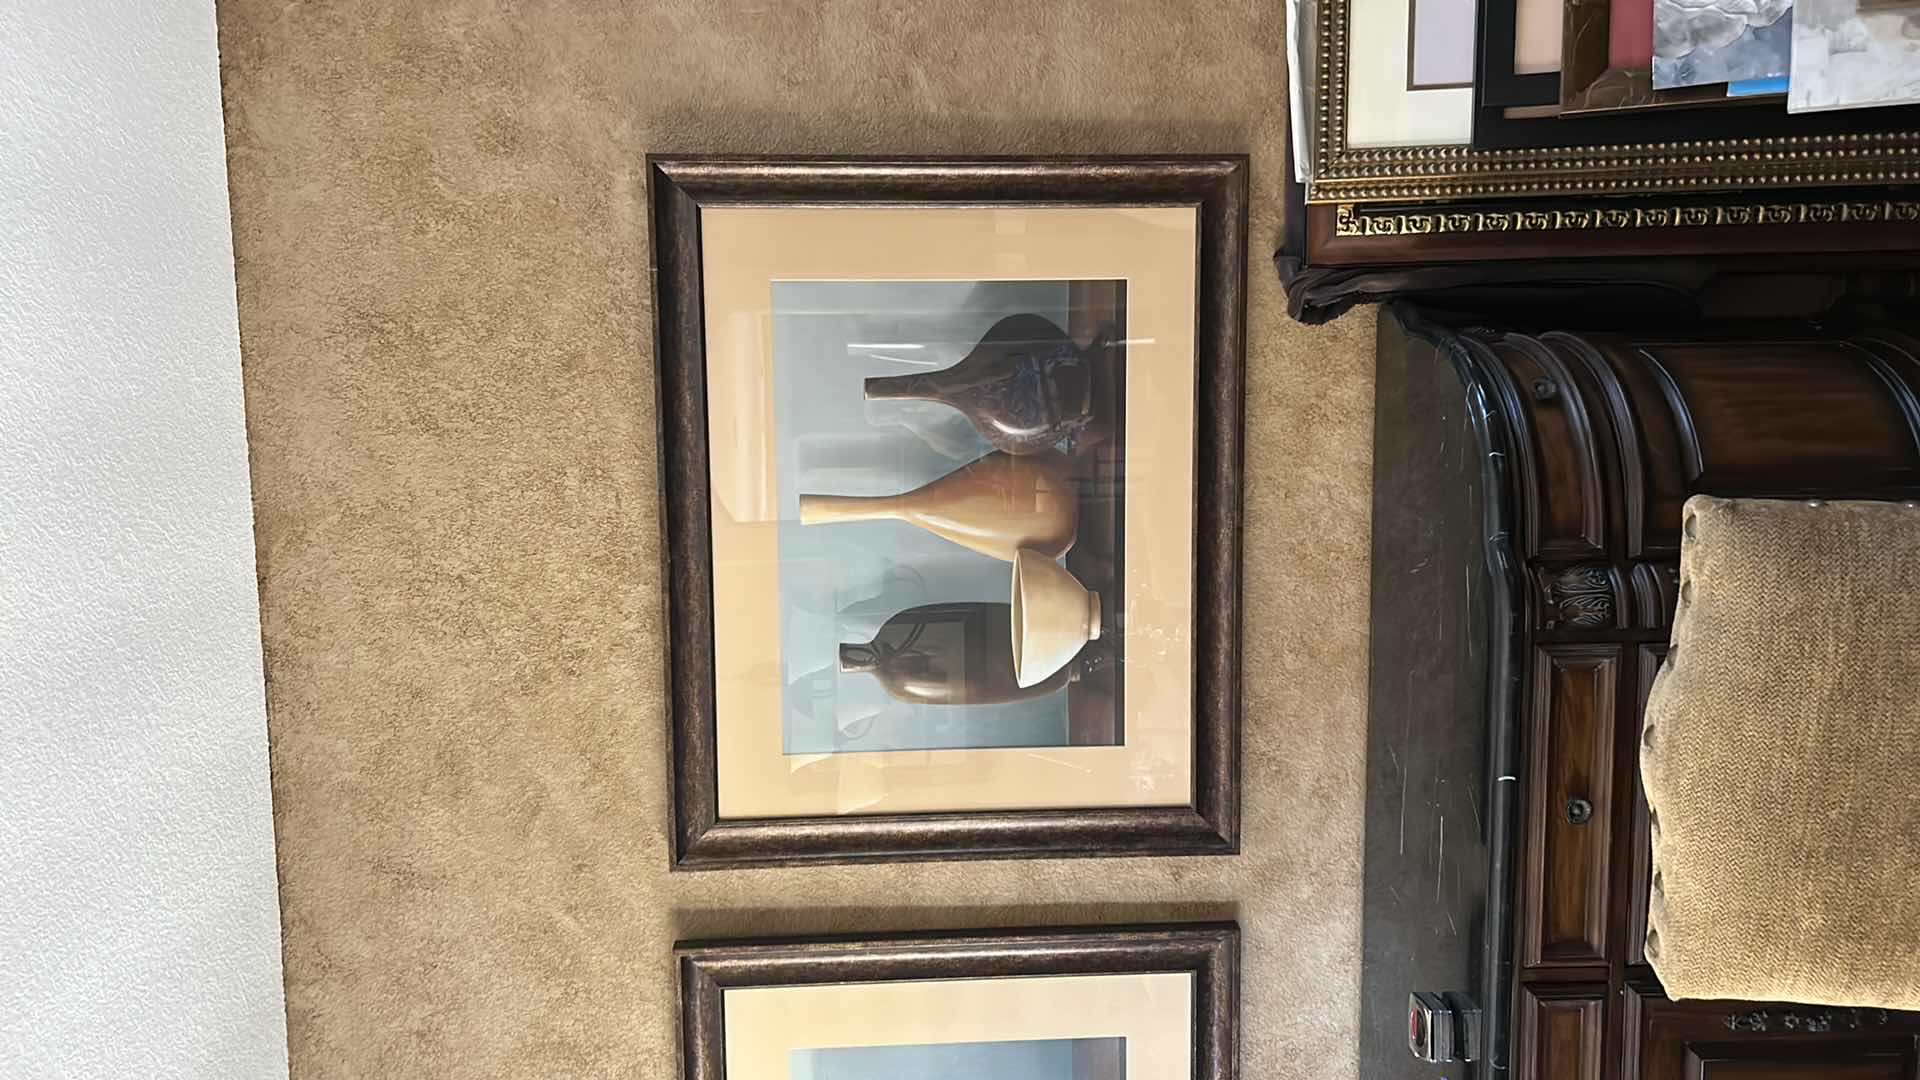 Photo 2 of Home decor still life vases framed artwork 46“ x 38“